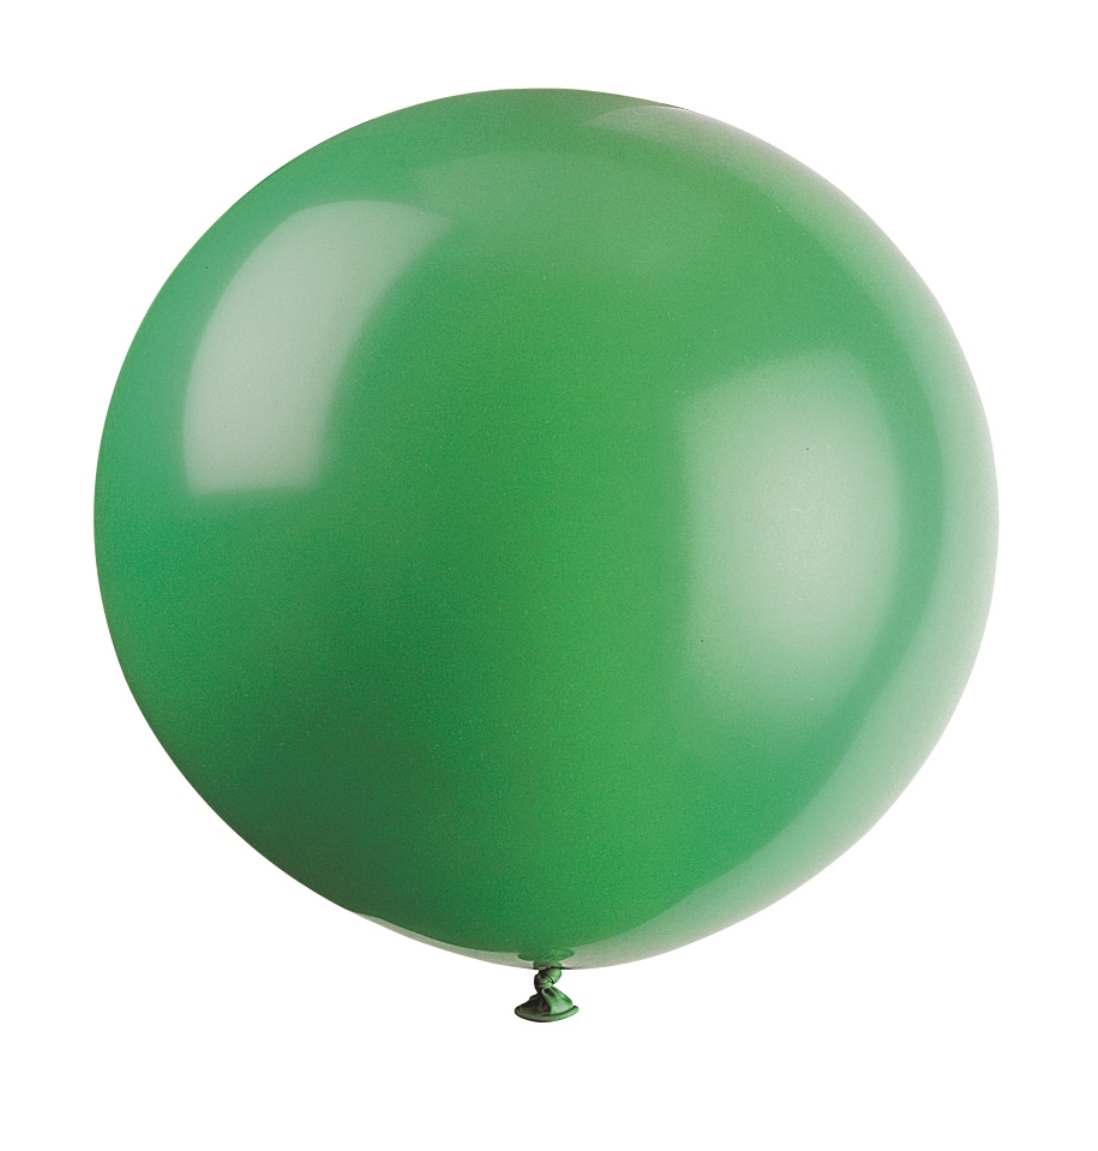 XL Riesenluftballons grün, 2 St.